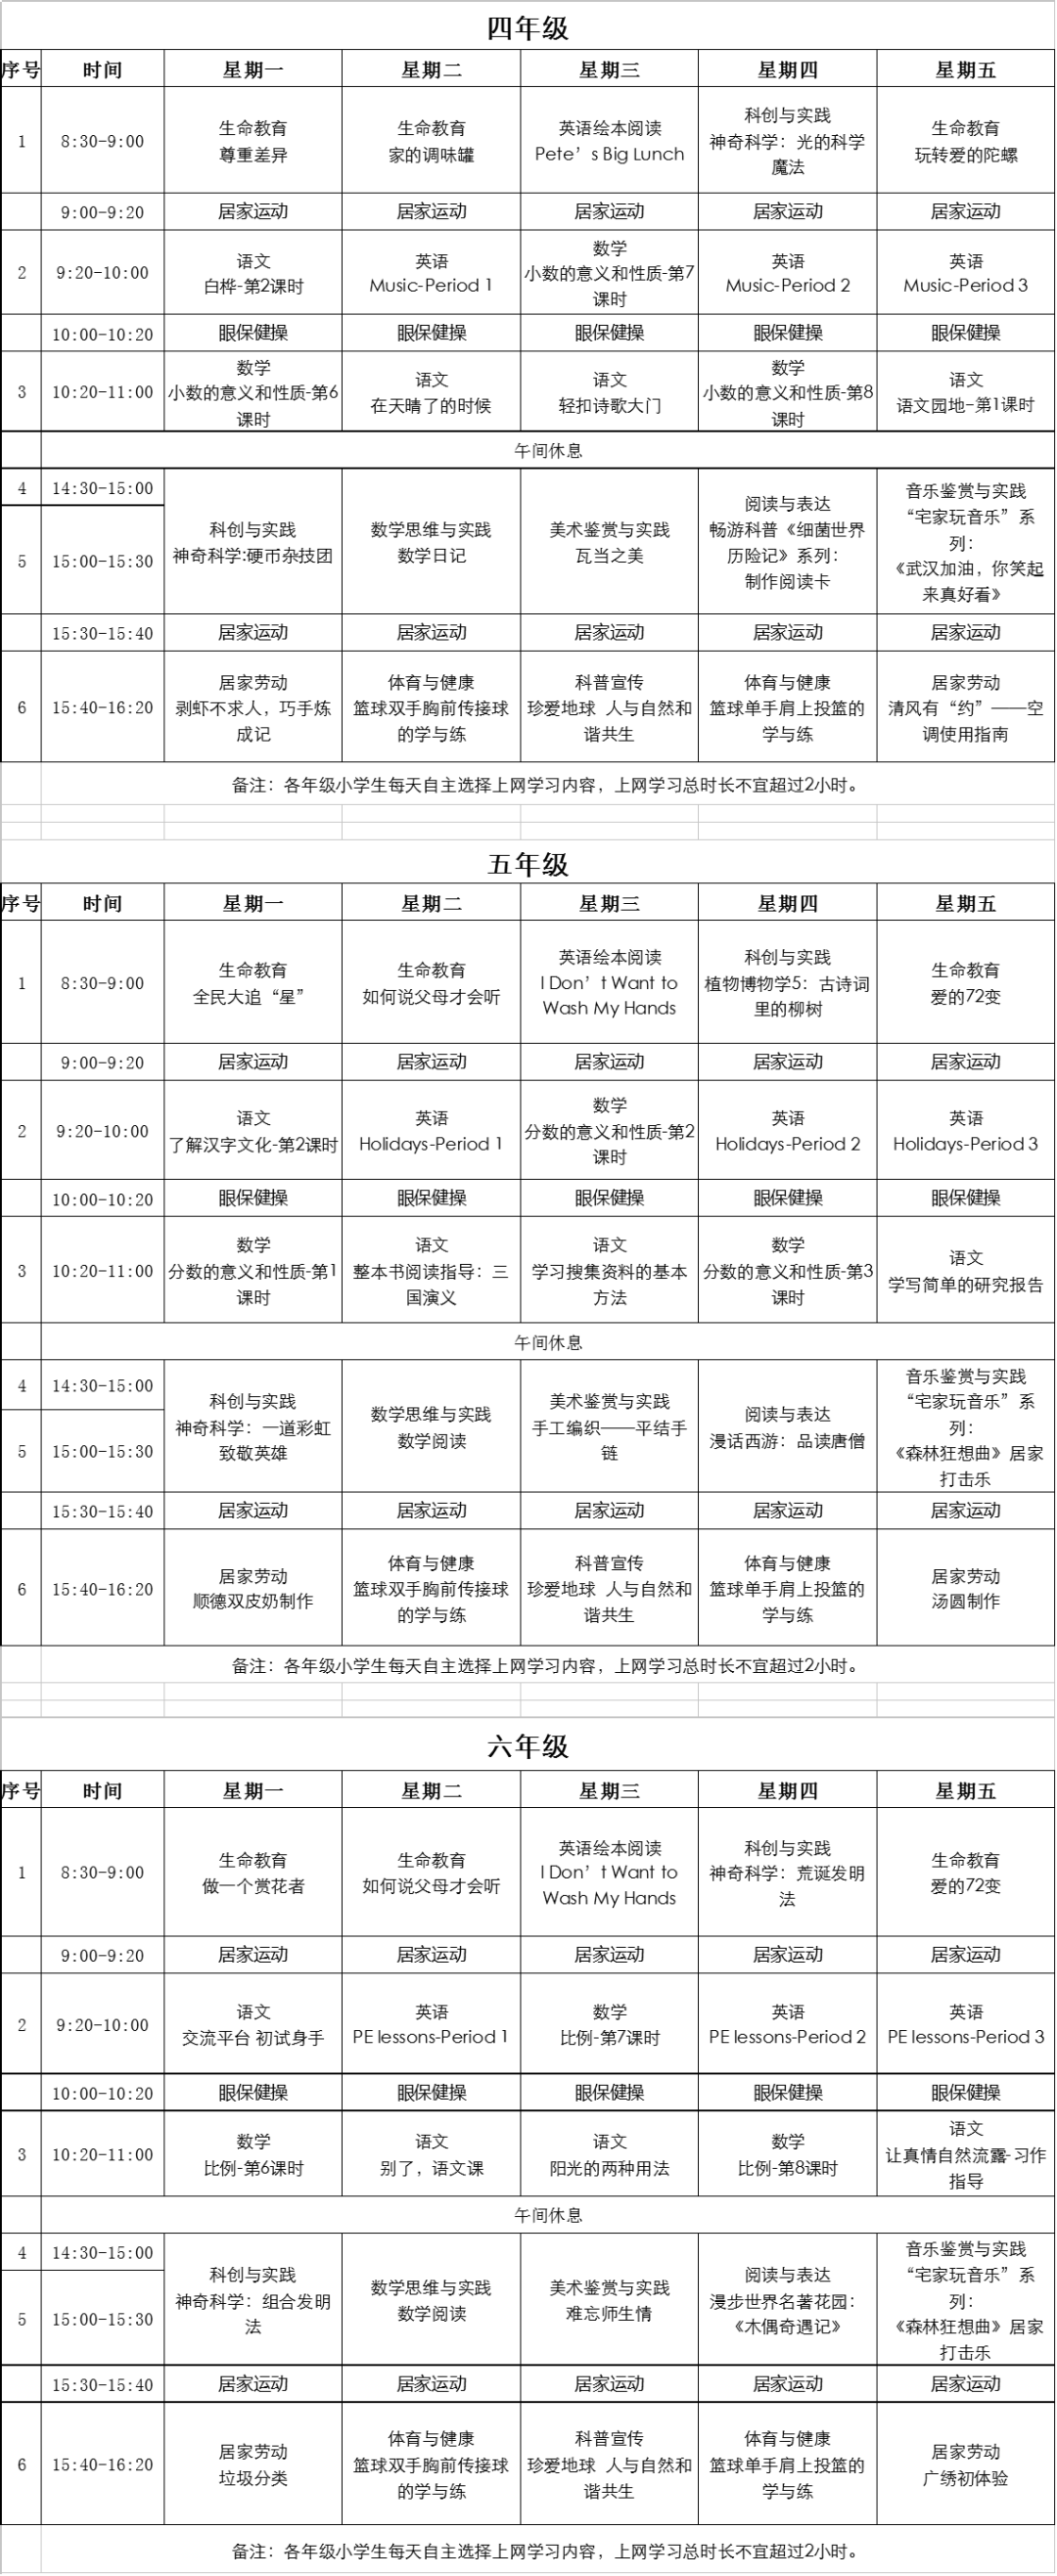 广东中小学“粤课堂”课程表完整版公布（4月20日2